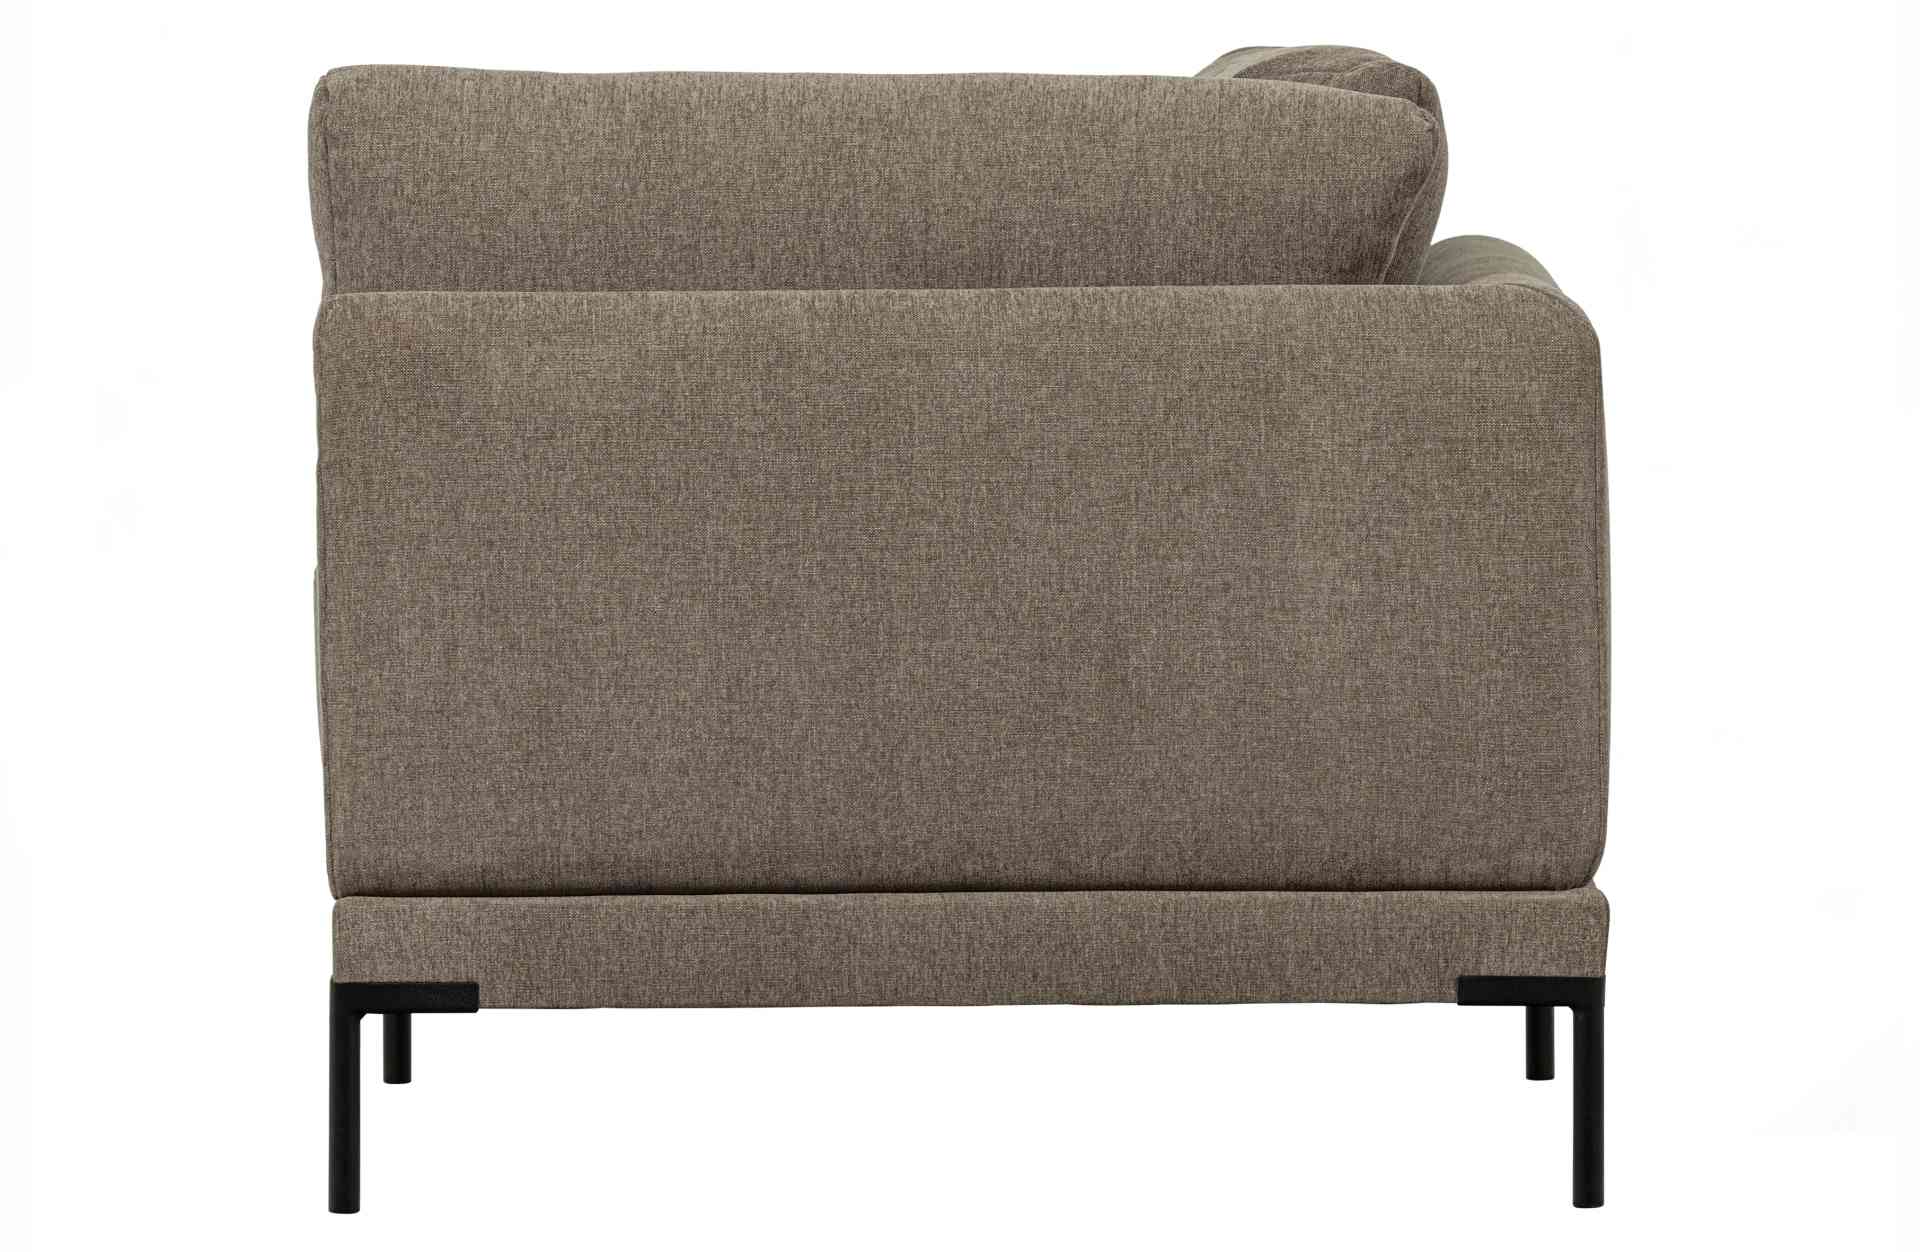 Das Modulsofa Couple Lounge überzeugt mit seinem modernen Design. Das Eck-Element wurde aus Melange Stoff gefertigt, welcher einen einen Taupe Farbton besitzen. Das Gestell ist aus Metall und hat eine schwarze Farbe. Das Element hat eine Länge von 100 cm 